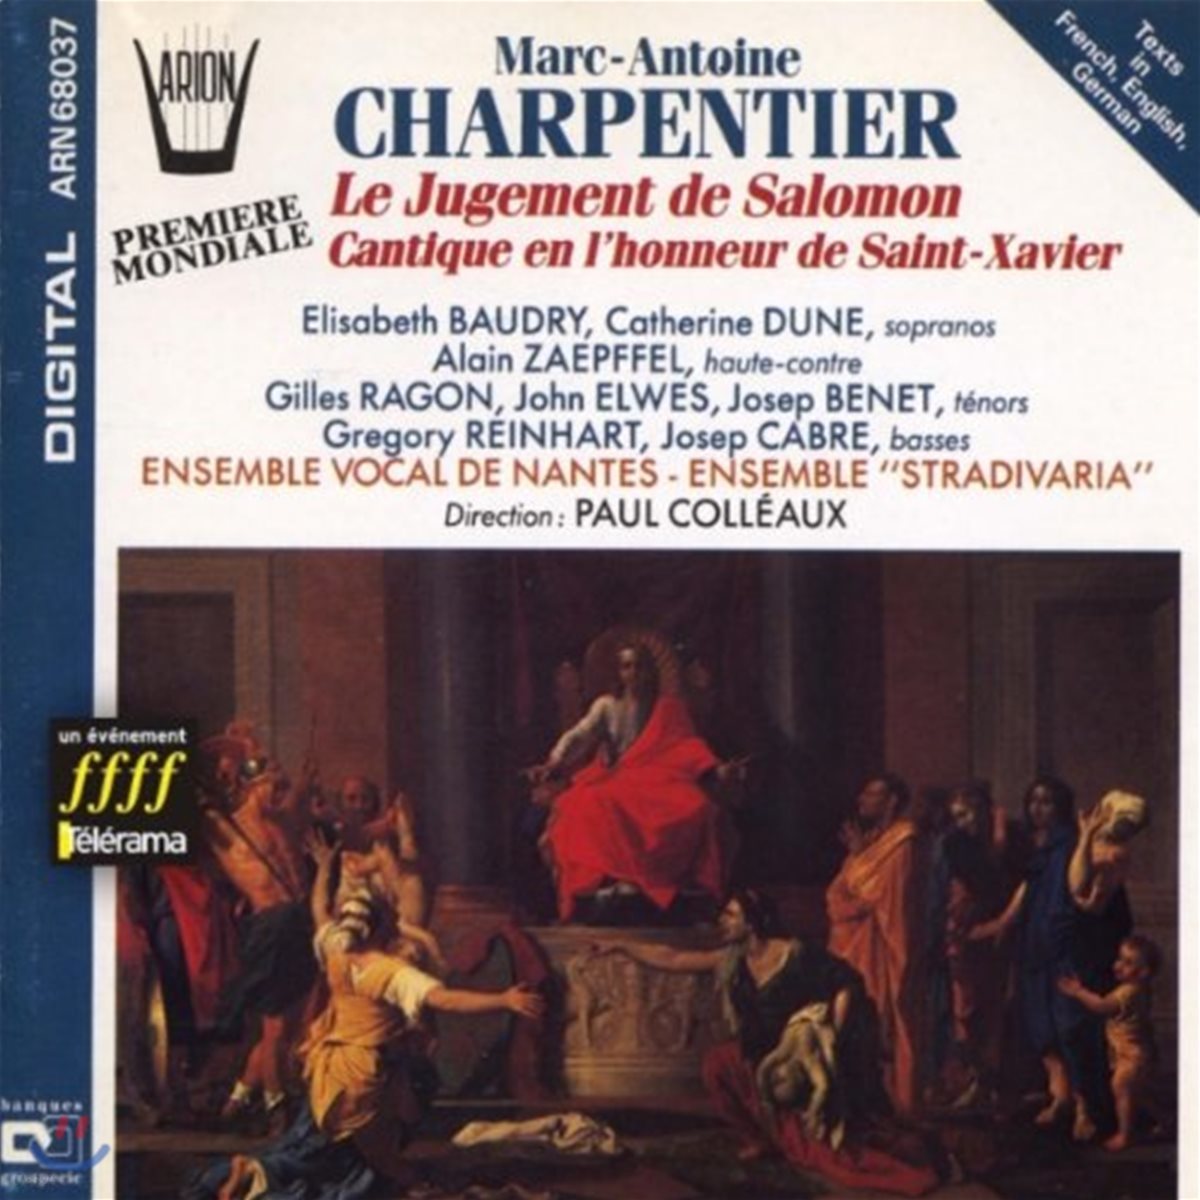 Paul Colleaux 샤르팡티에: 솔로몬의 심판 (Charpentier: Le Jugement de Salomon)